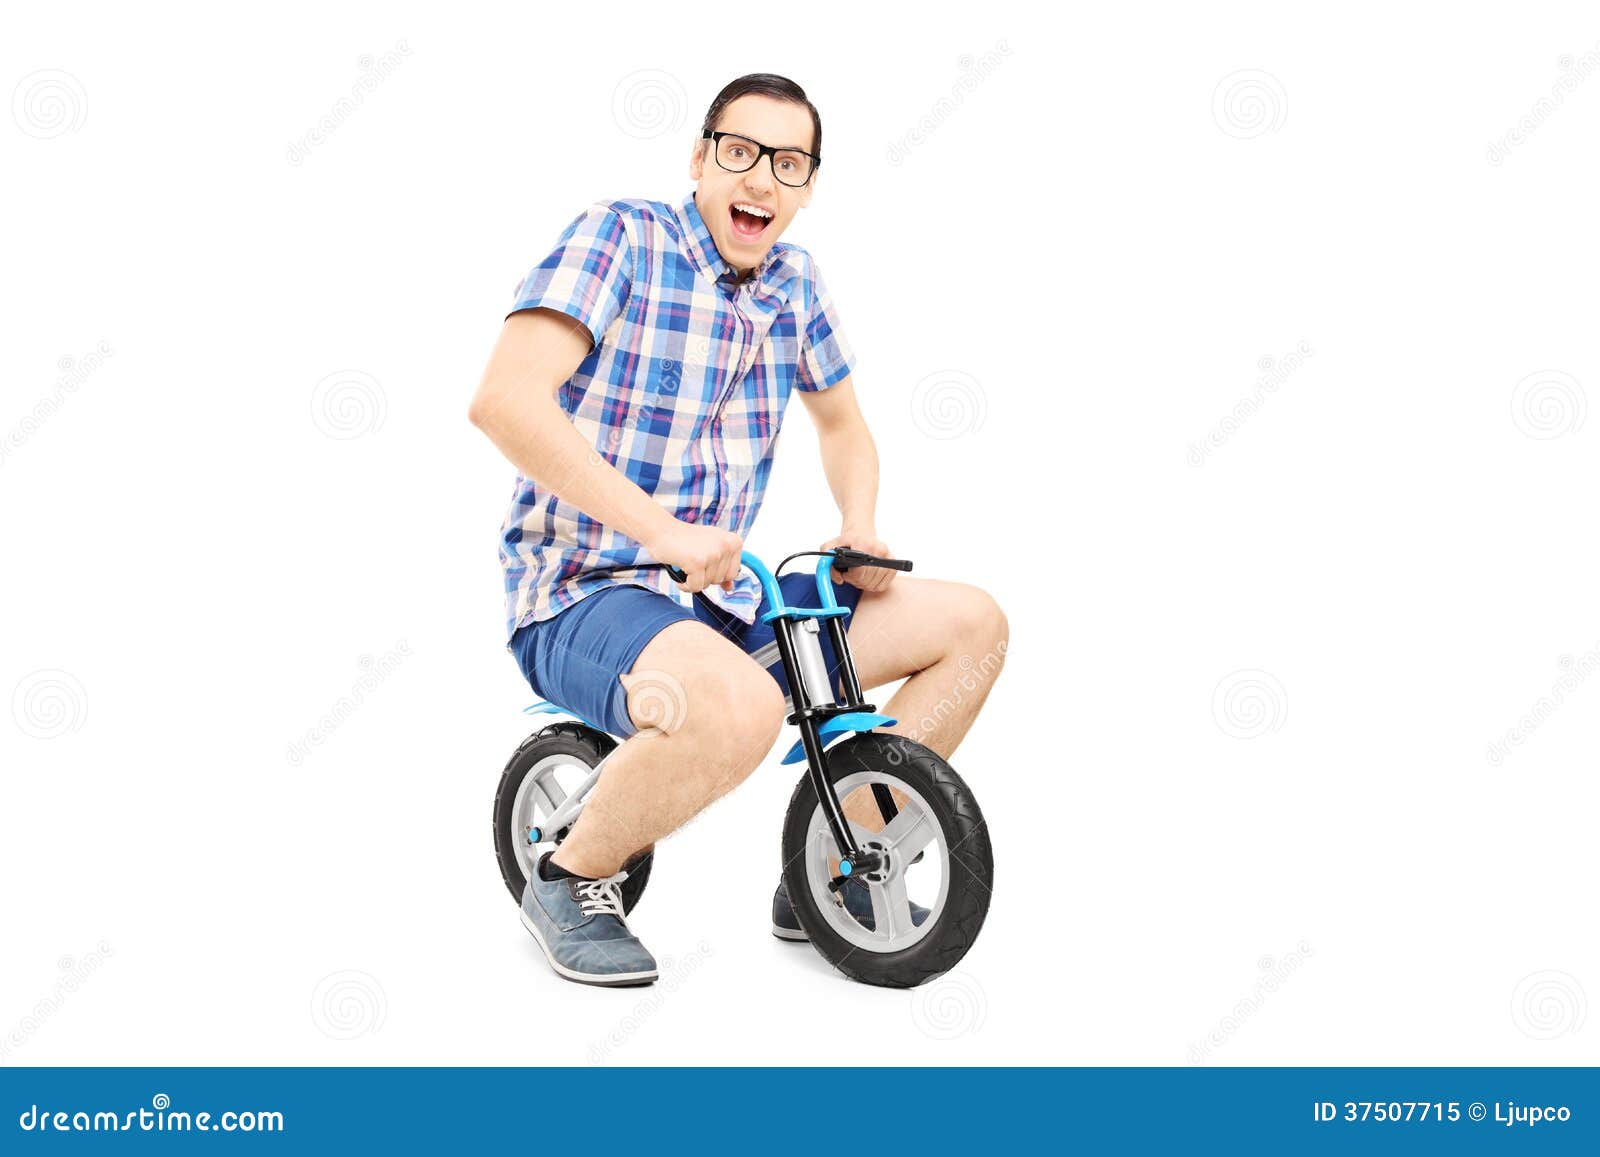 Bicycle Man 27